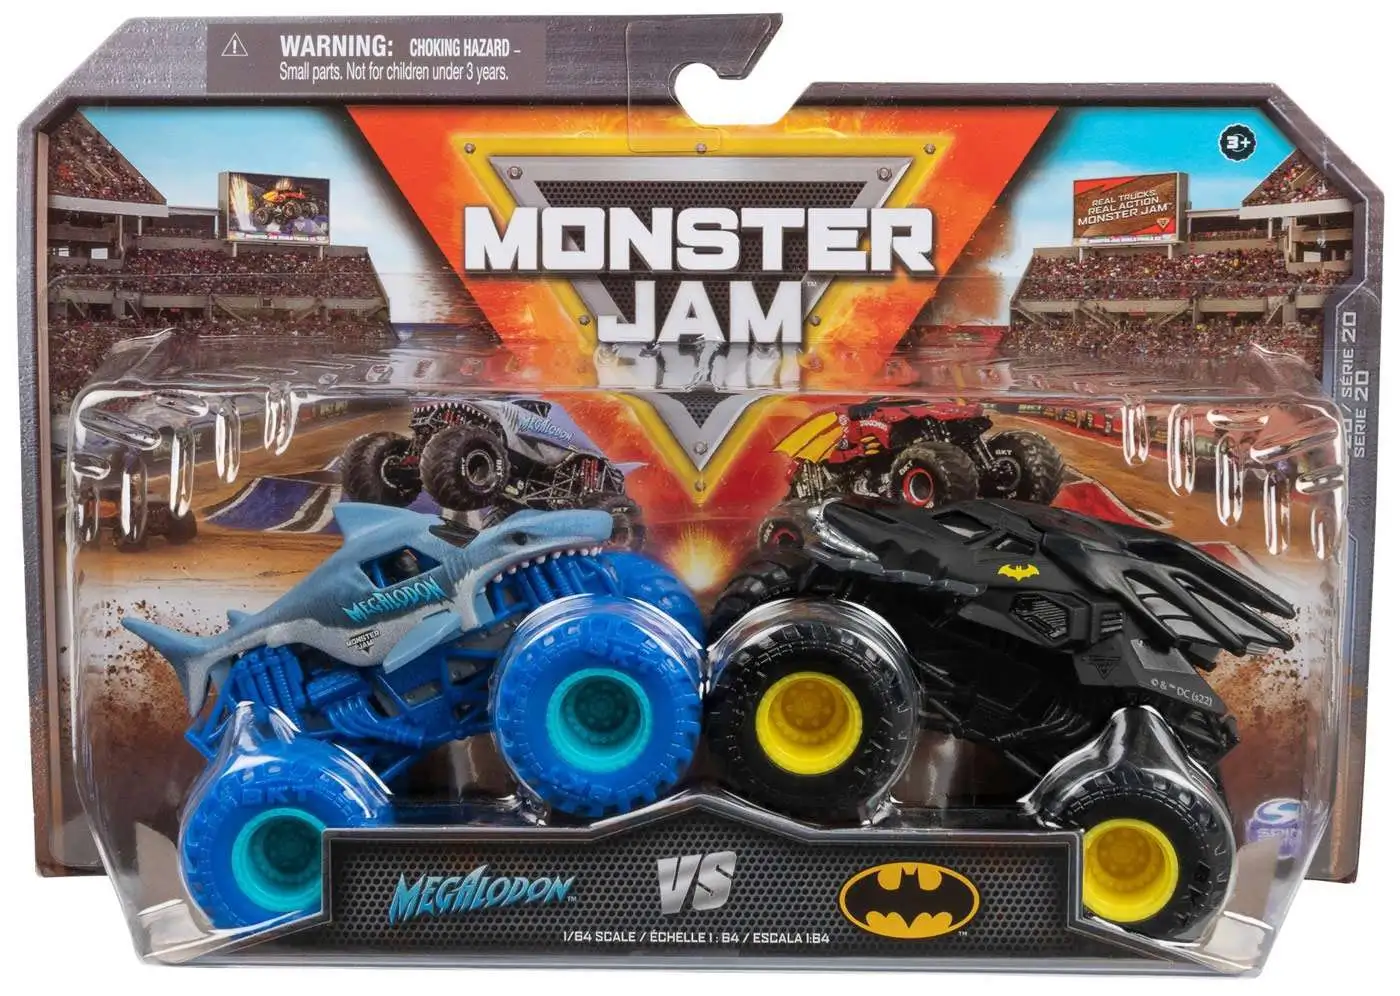 Monster Jam Megalodon vs Batman 164 Diecast Car 2-Pack Spin Master Toys -  ToyWiz